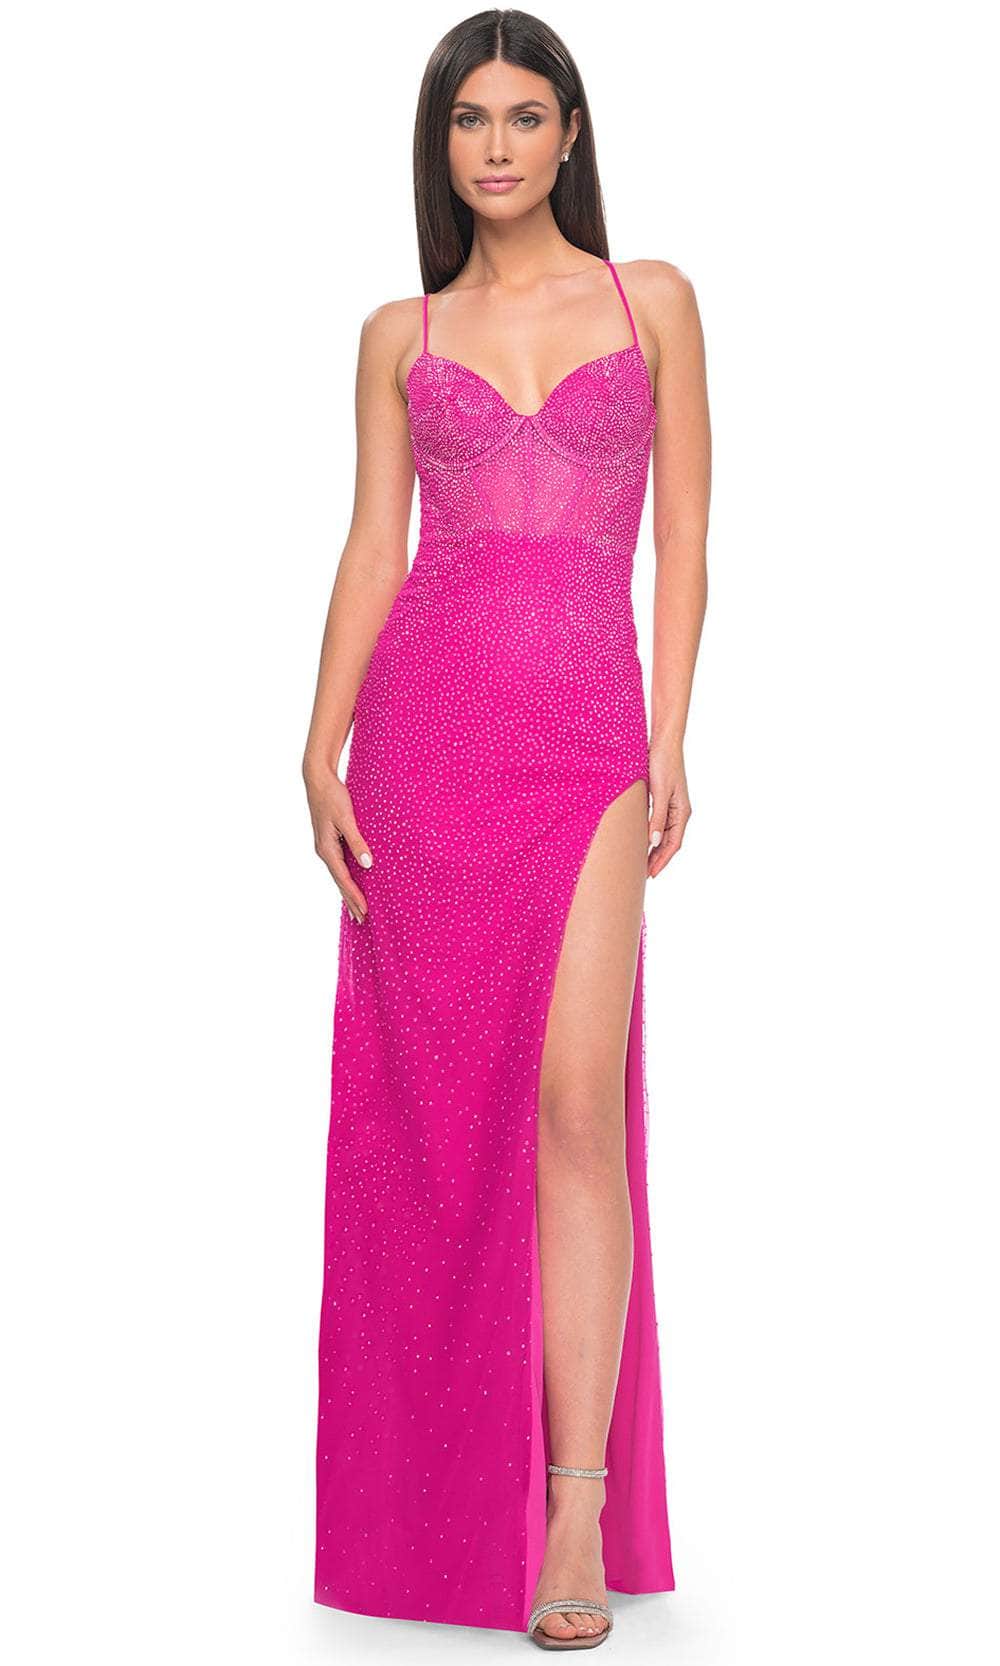 La Femme 32328 - Rhinestone Embellished Sleeveless Prom Dress Evening Dresses 00 /  Hot Pink